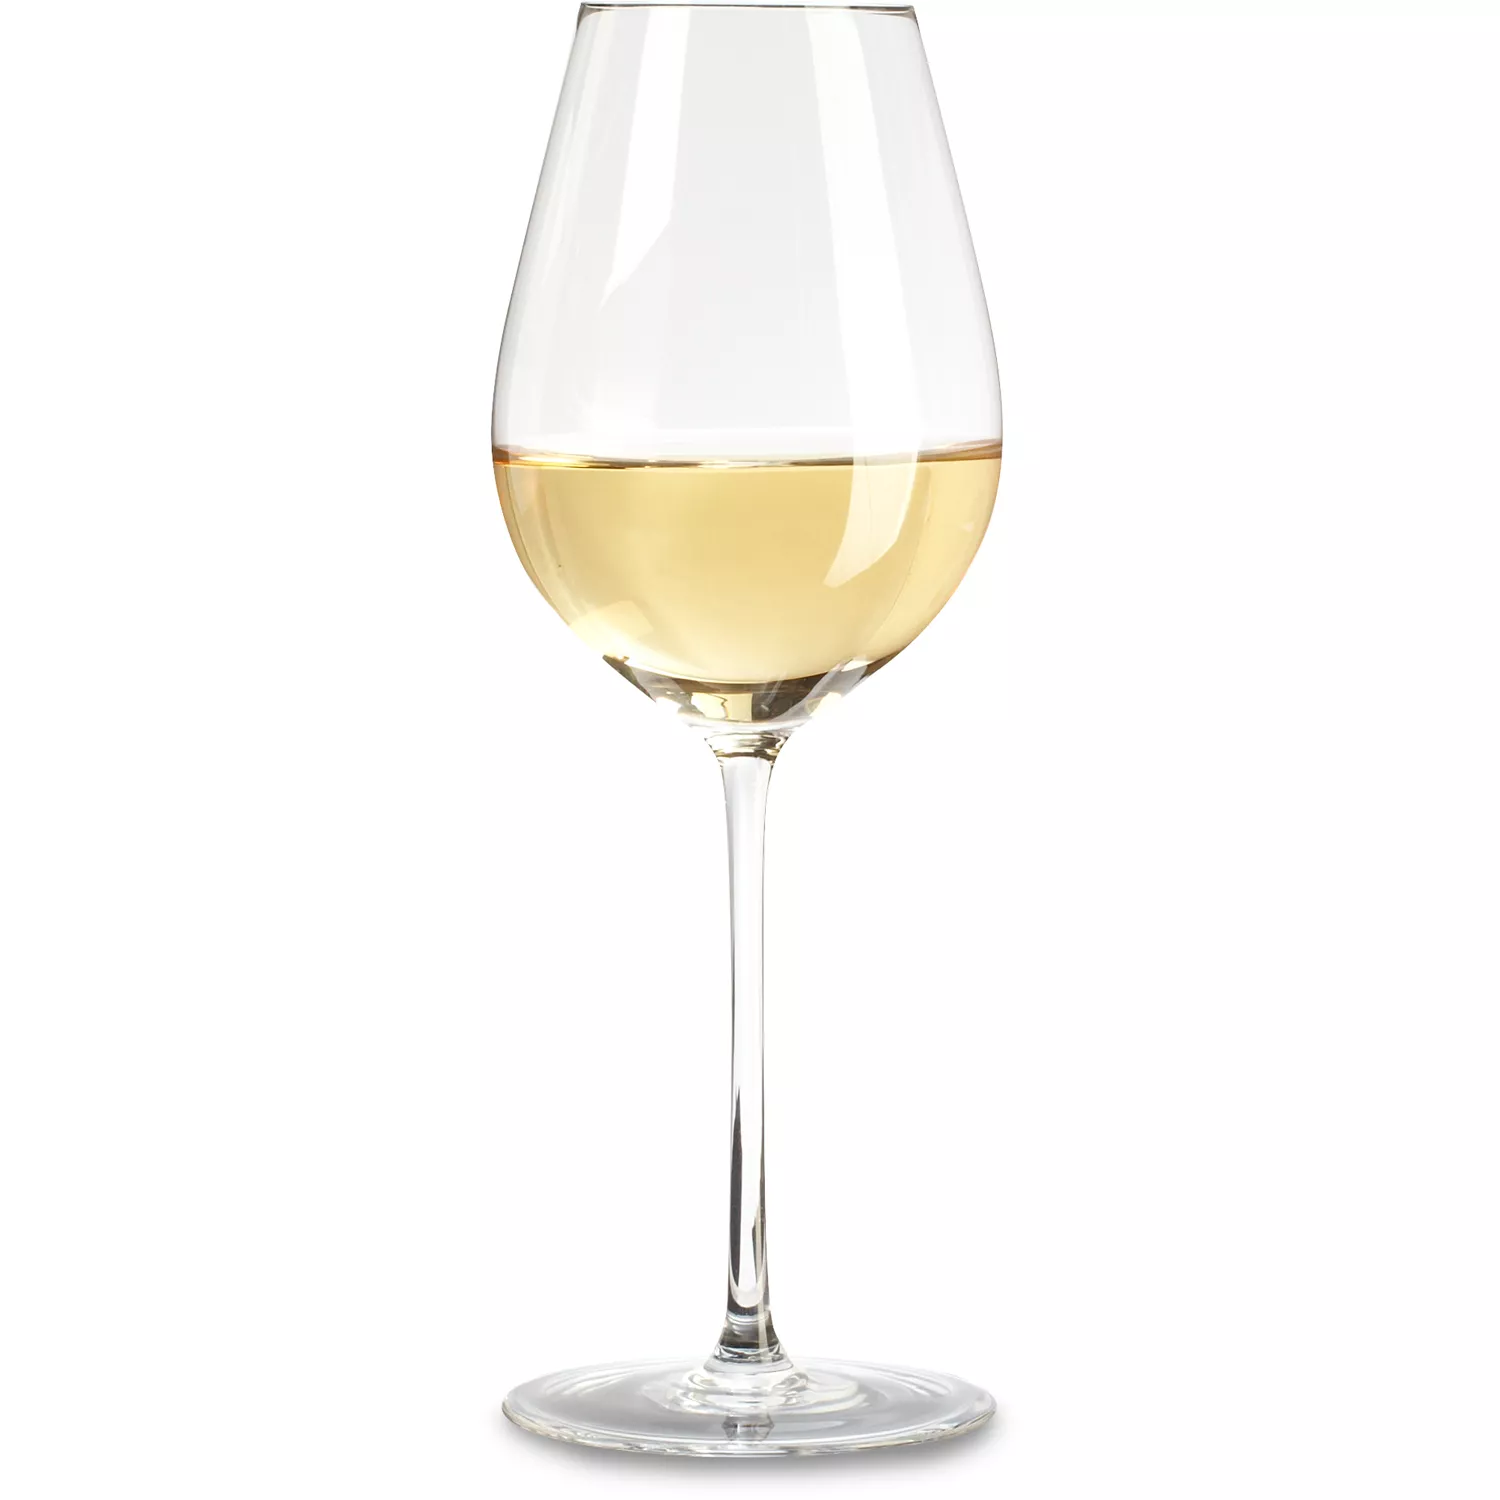 Zwiesel Glas Handmade Enoteca Chardonnay Wine Glass